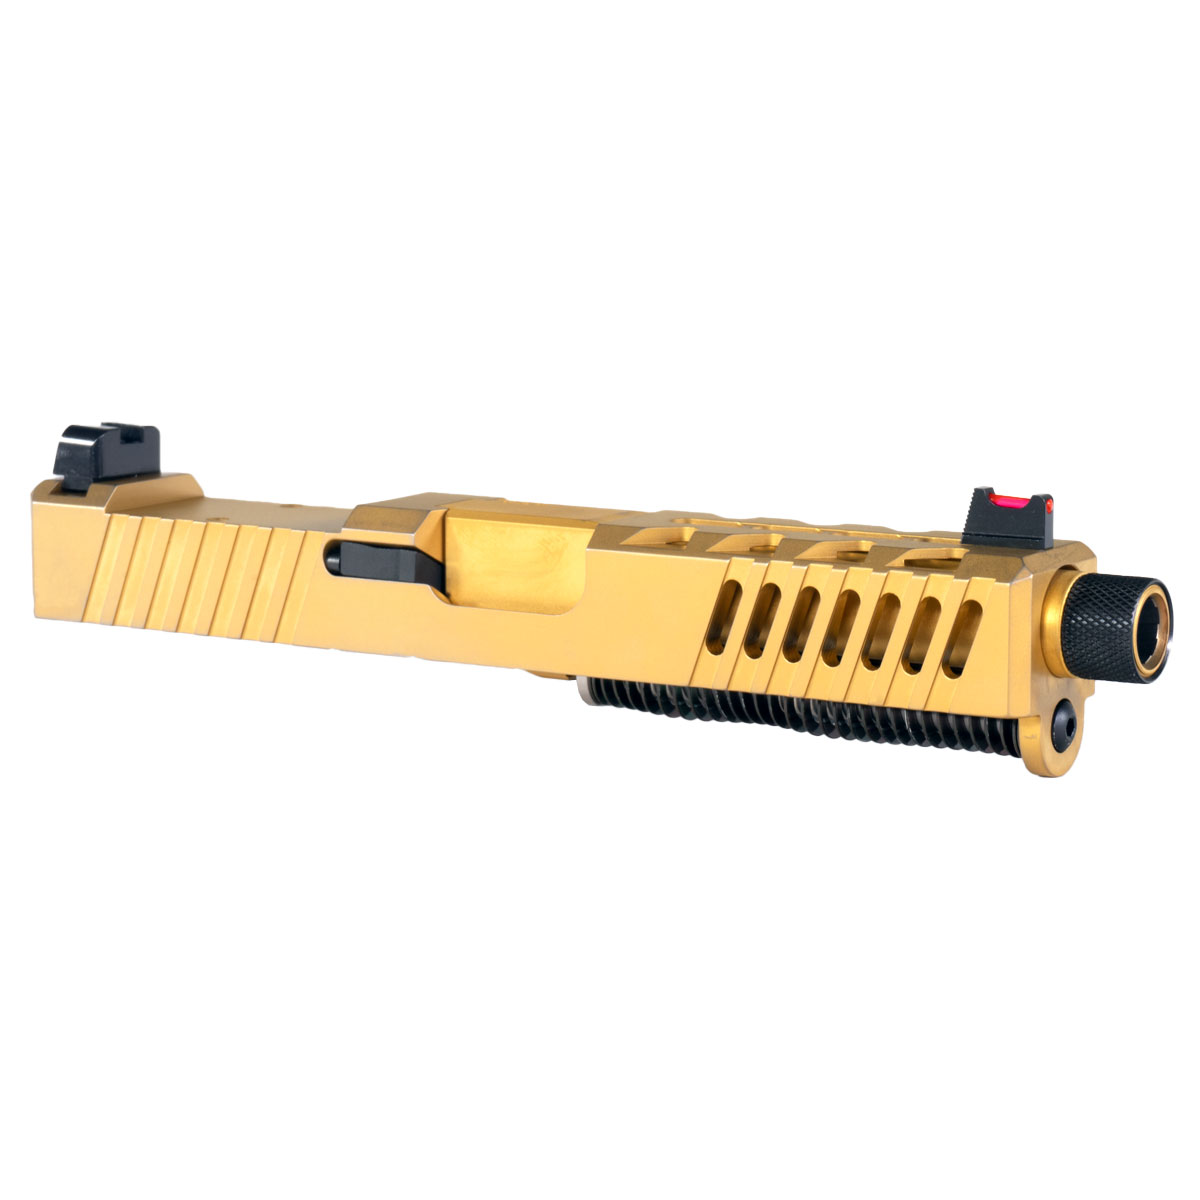 MMC 'AU-197' 9mm Complete Slide Kit - Glock 19 Compatible